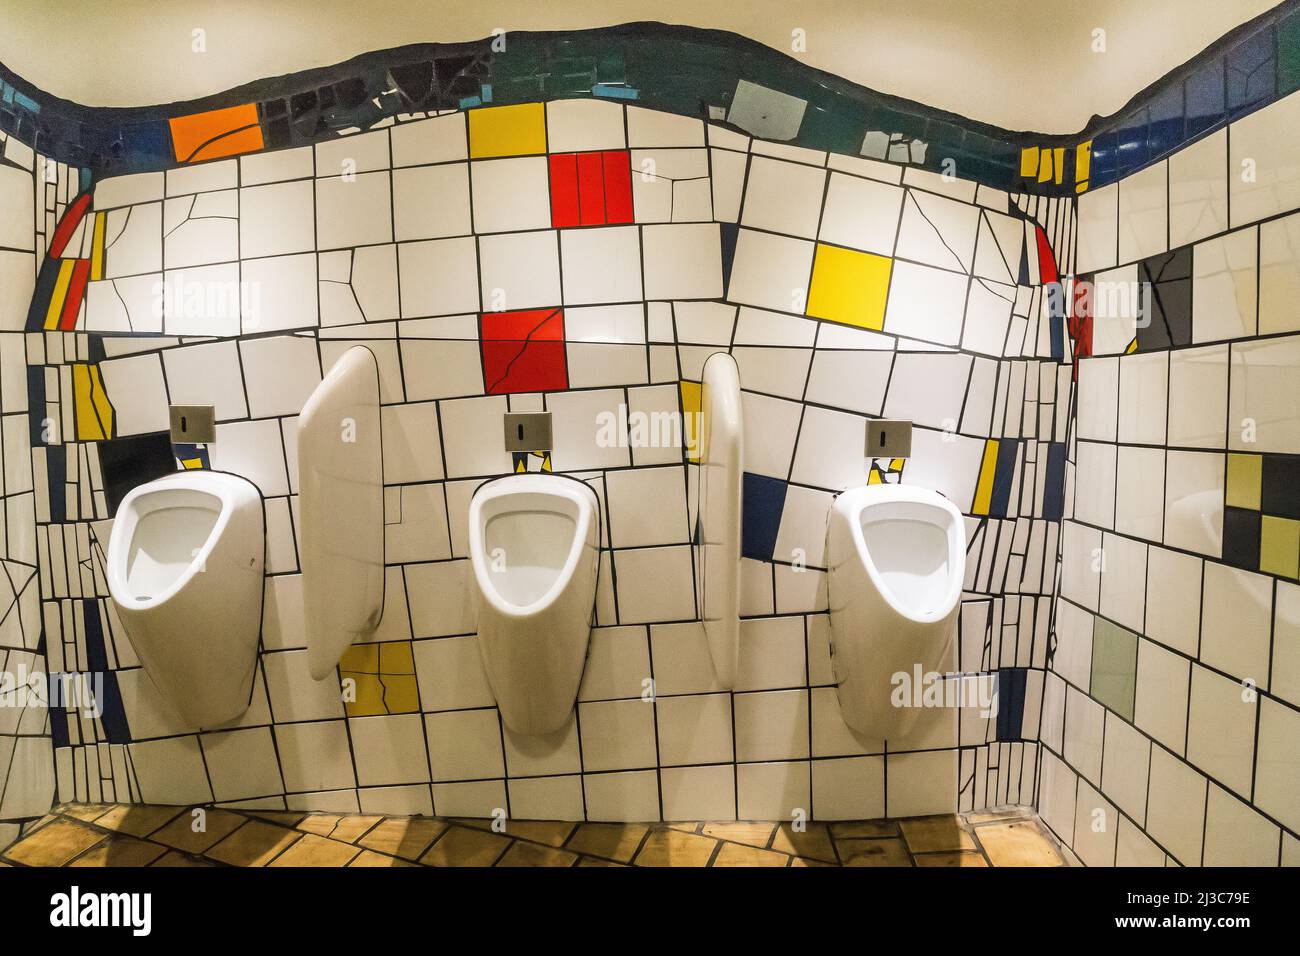 WIEN, ÖSTERREICH - 22. MAI 2019: Dies ist ein Fragment des Toiletteninnenraums im Jugendstil der Galerie Hundertwasser Village. Stockfoto